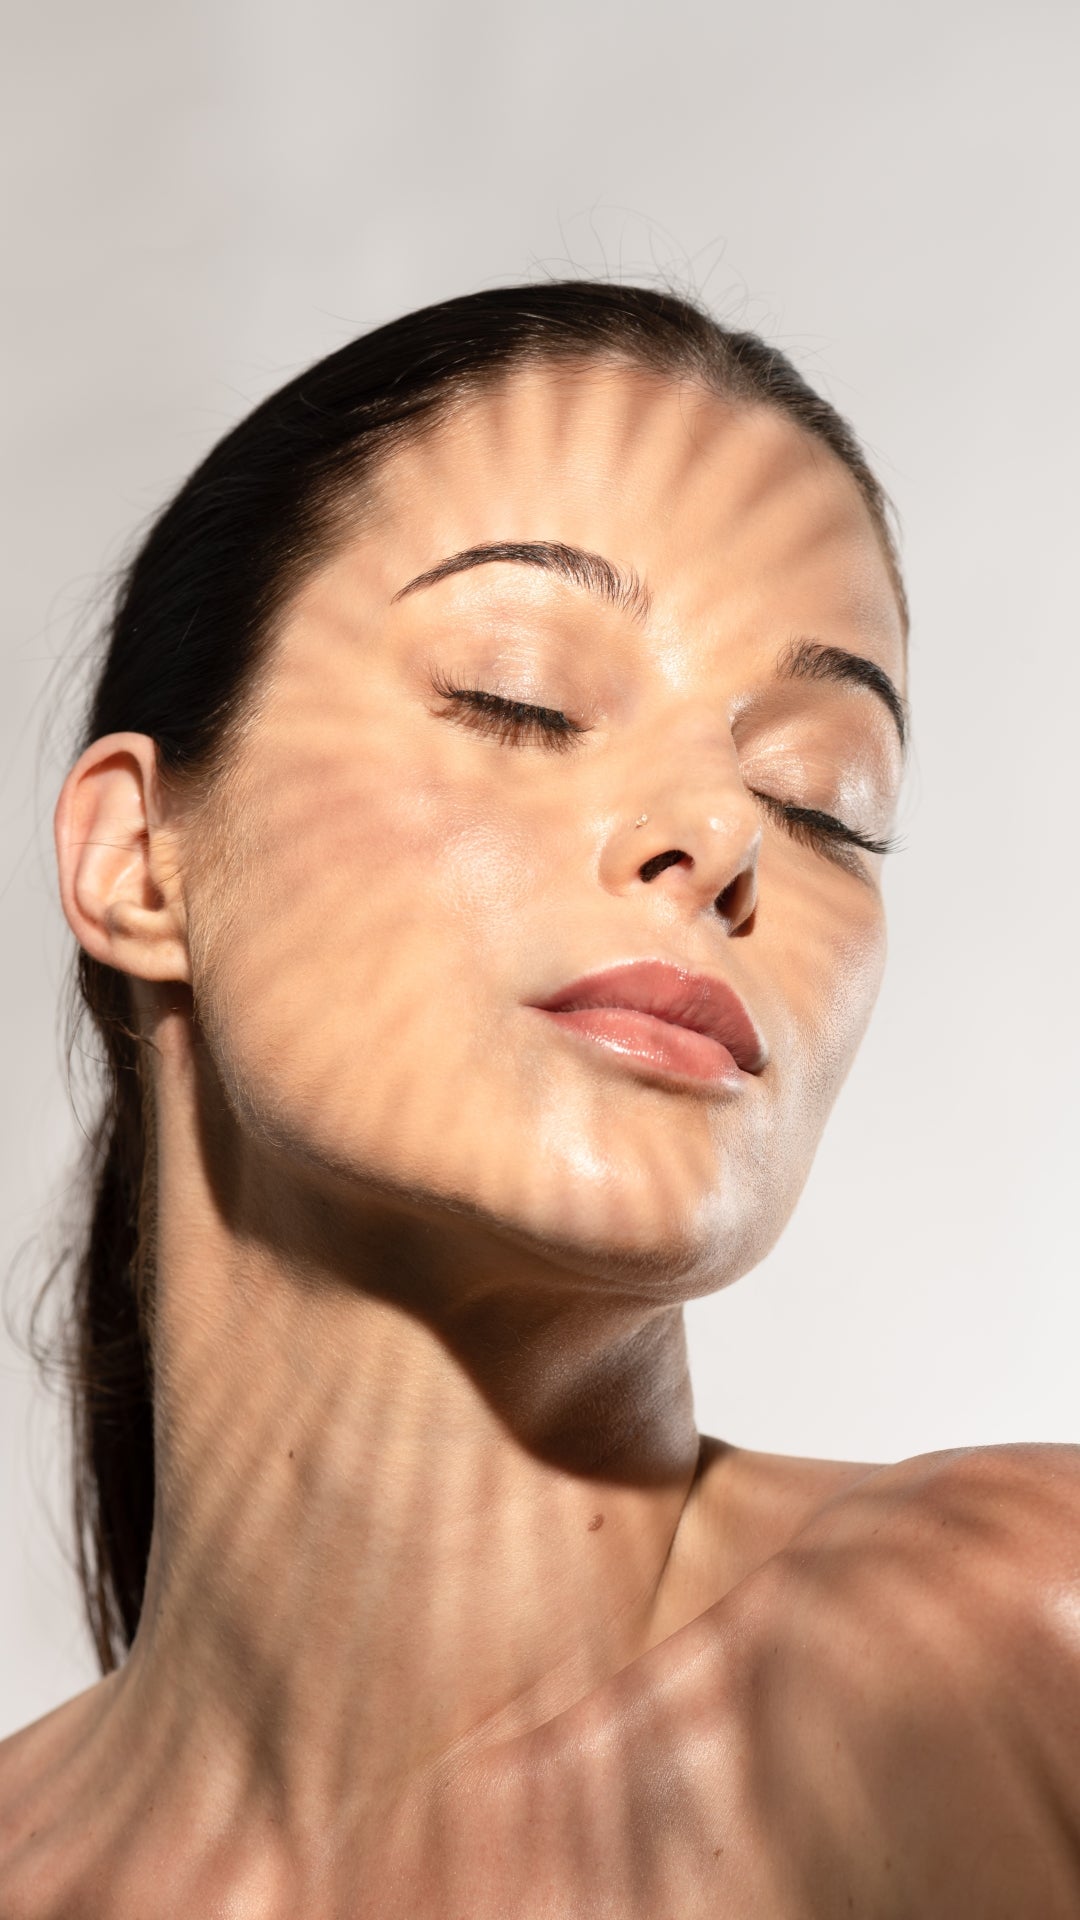 Rayonnement UV: comprendre les risques et la prévention pour une peau saine